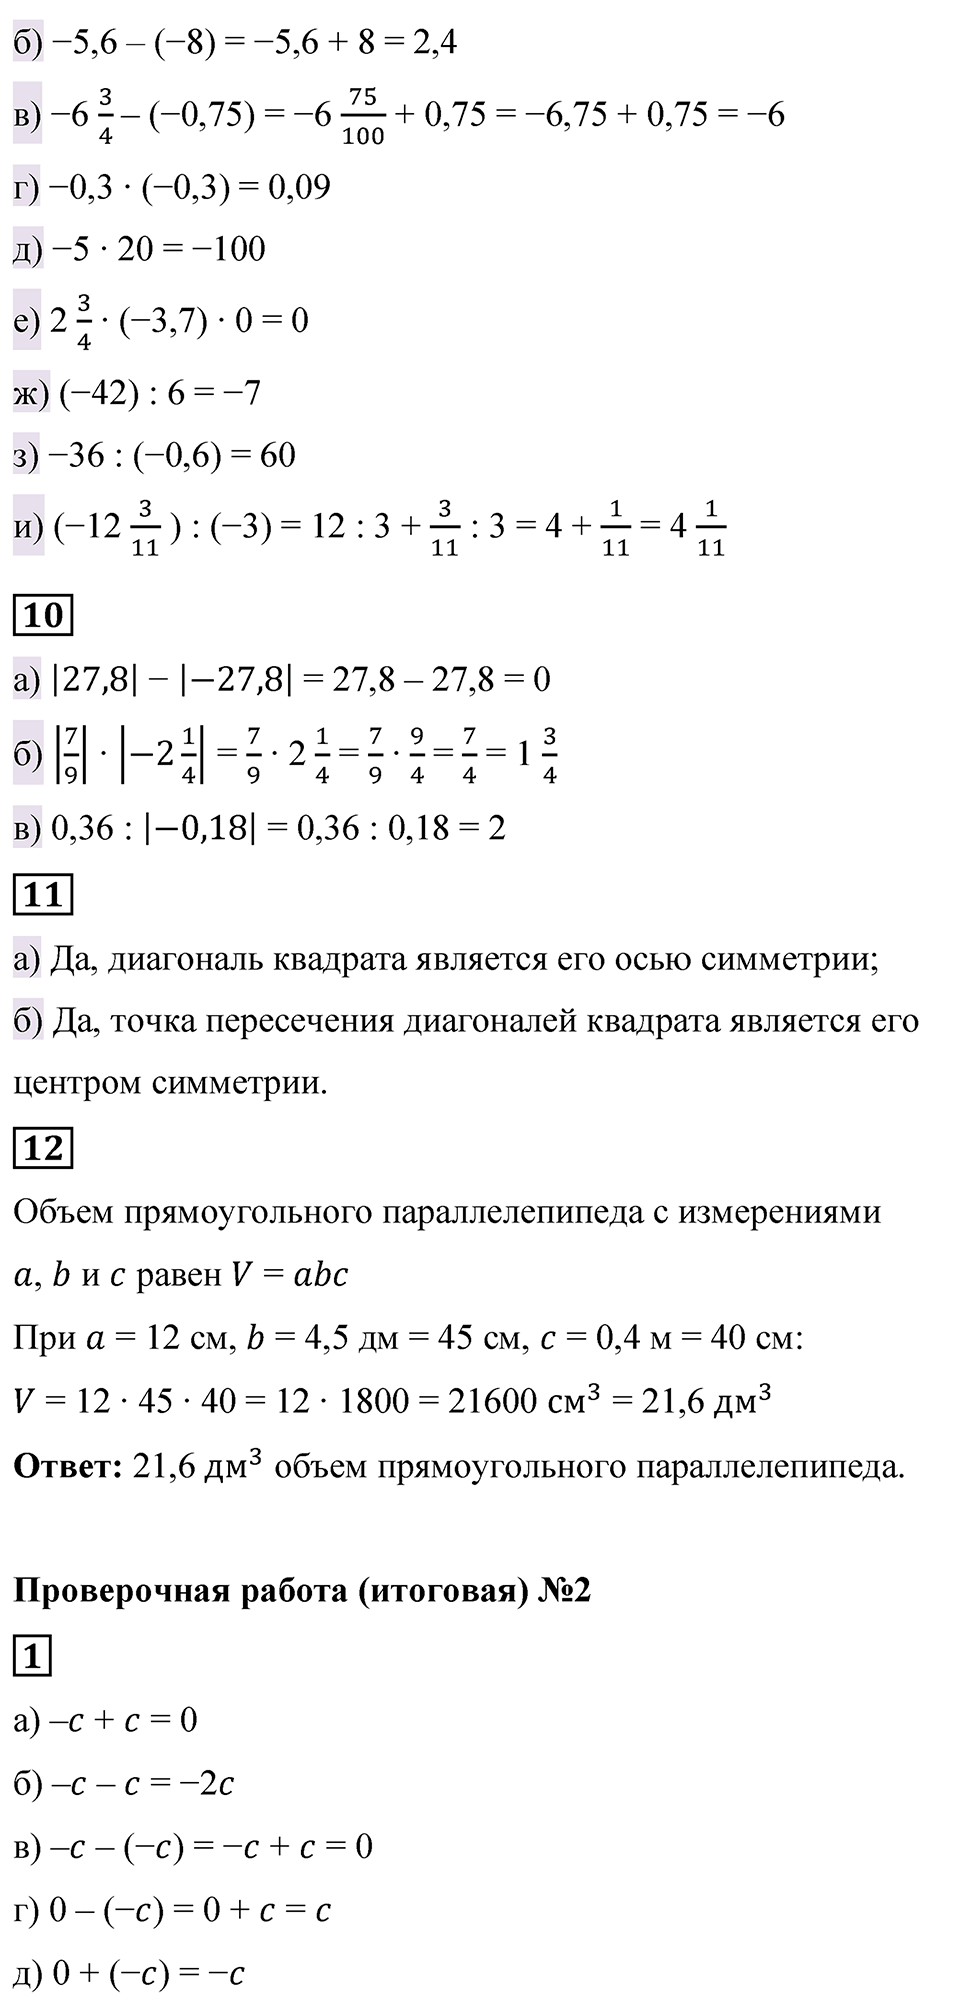 страница 137-138 Проверьте себя математика 6 класс Виленкин часть 2 просвещение ФГОС 2023